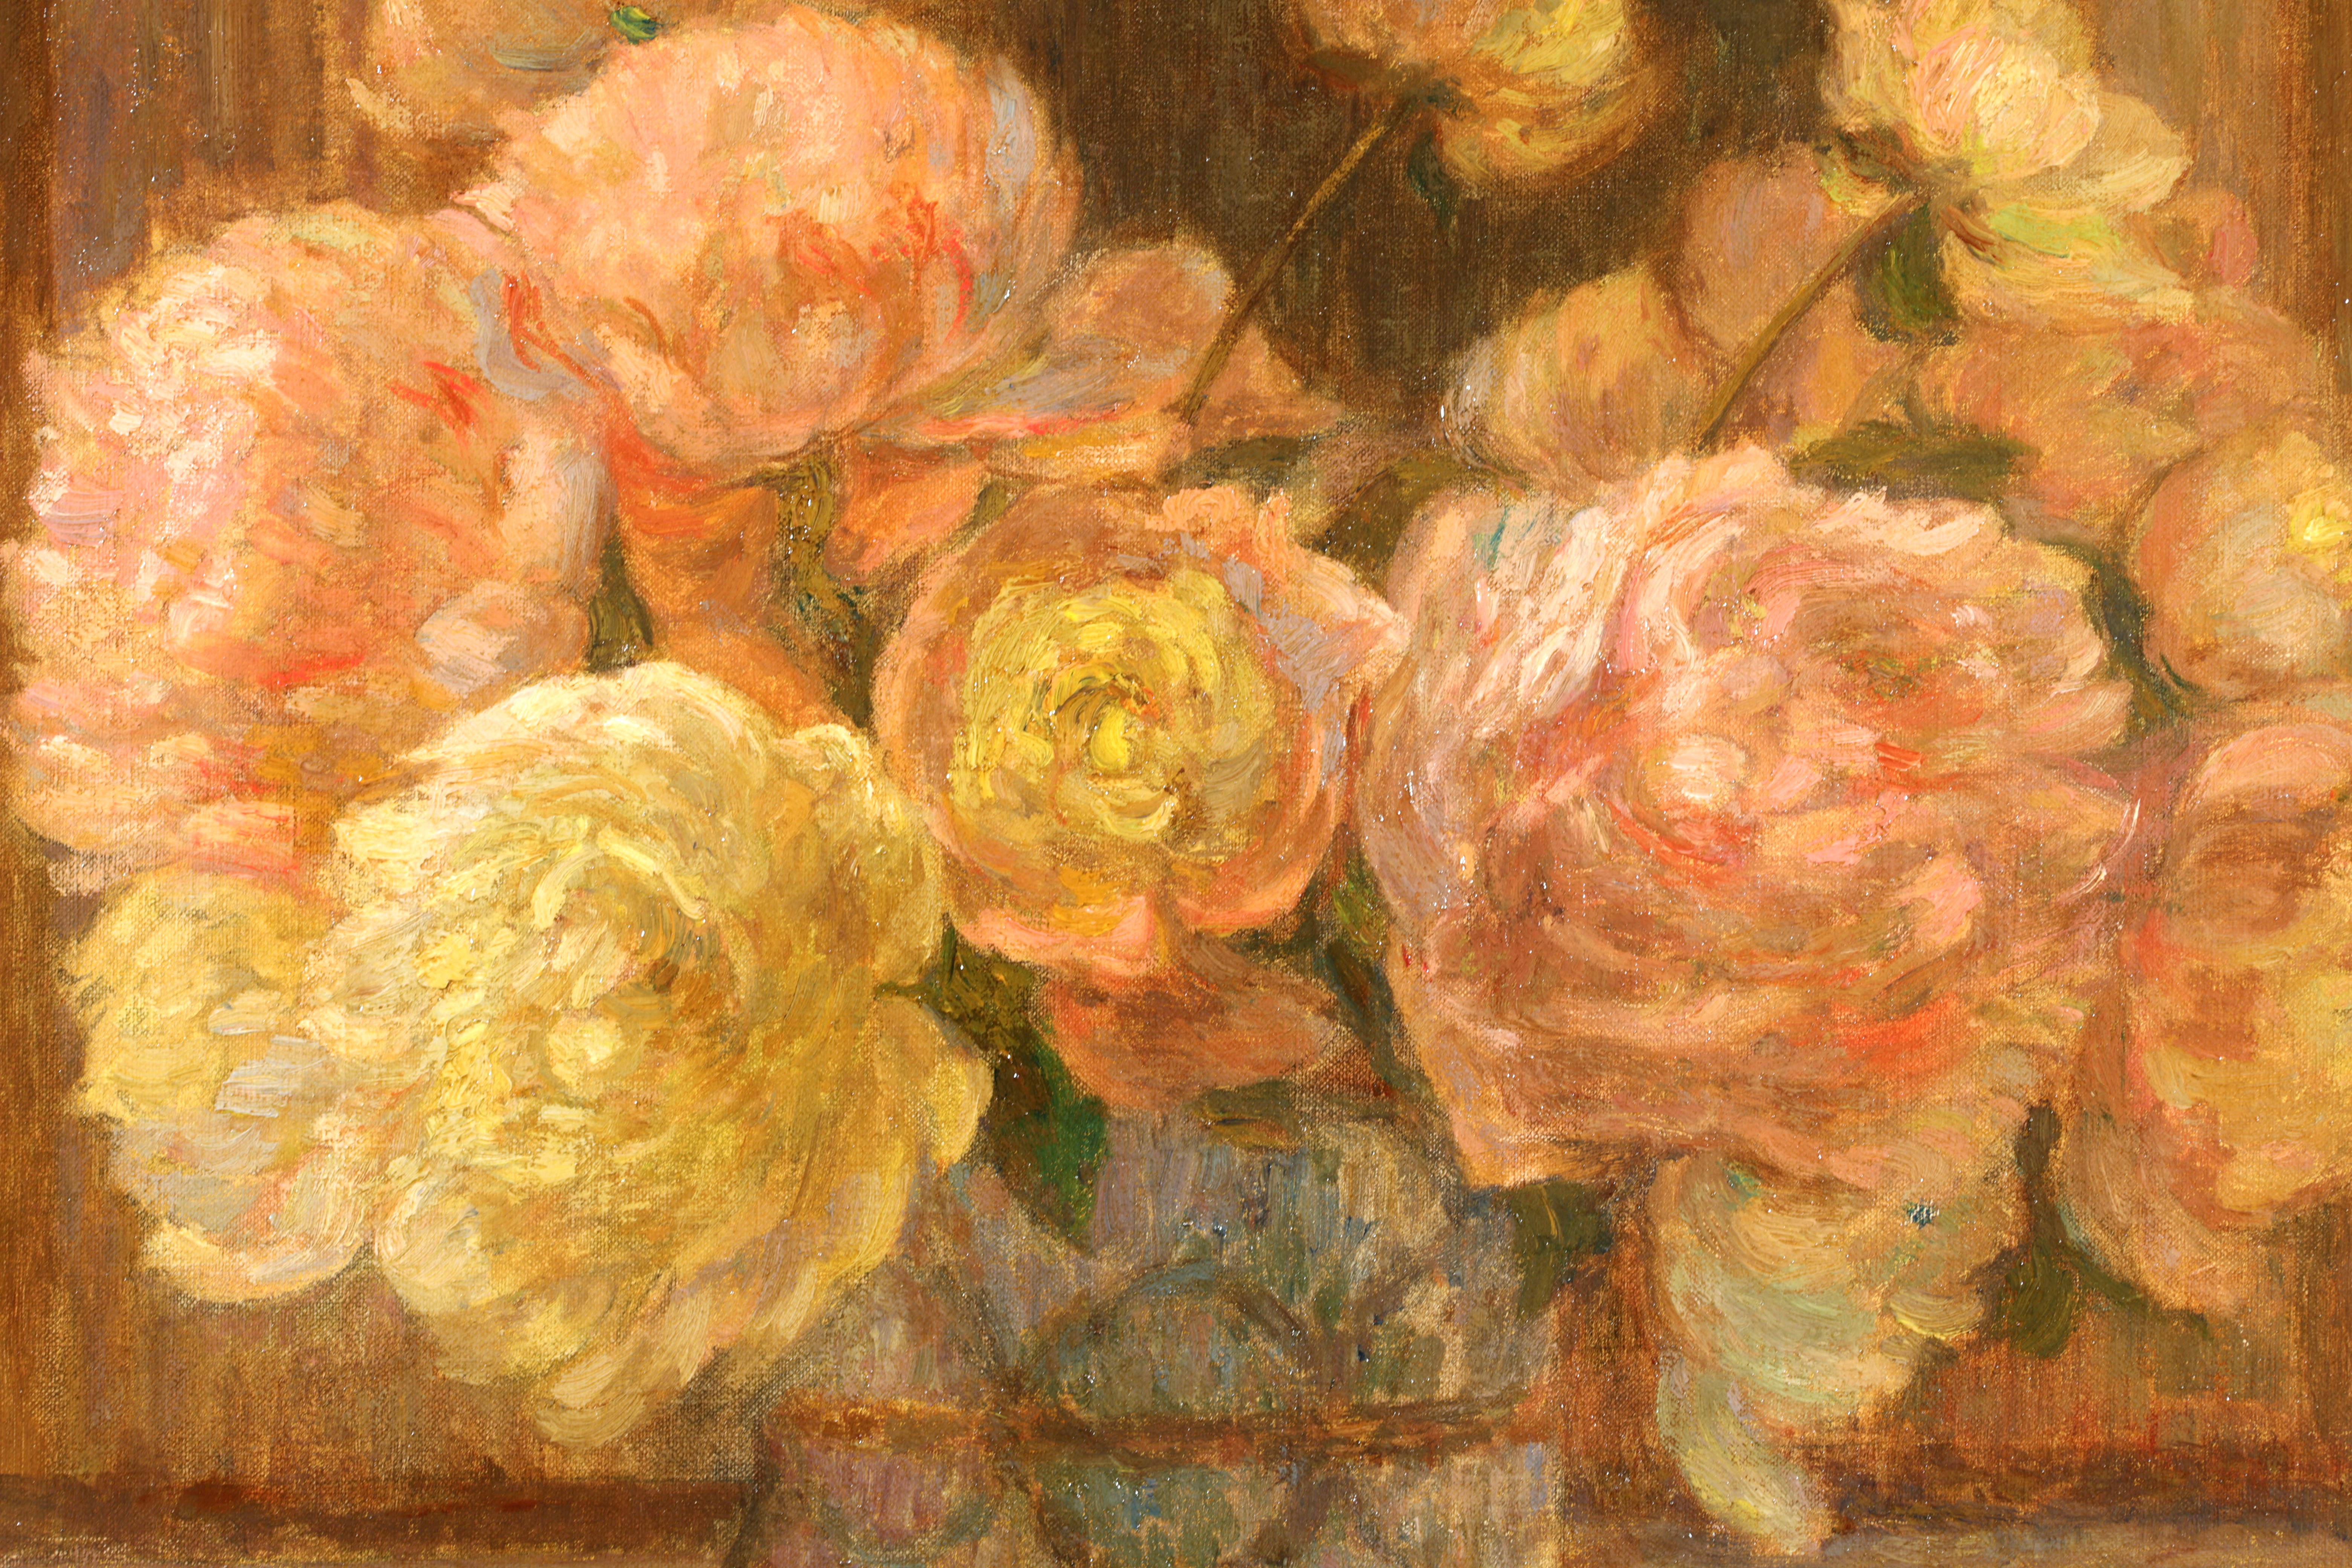 Nature morte signée, huile sur toile vers 1910 par la peintre impressionniste française Marie Duhem. Cette superbe pièce représente de délicates pivoines roses et jaunes dans un vase placé sur une table ornée d'un plateau en marbre, avec un éventail